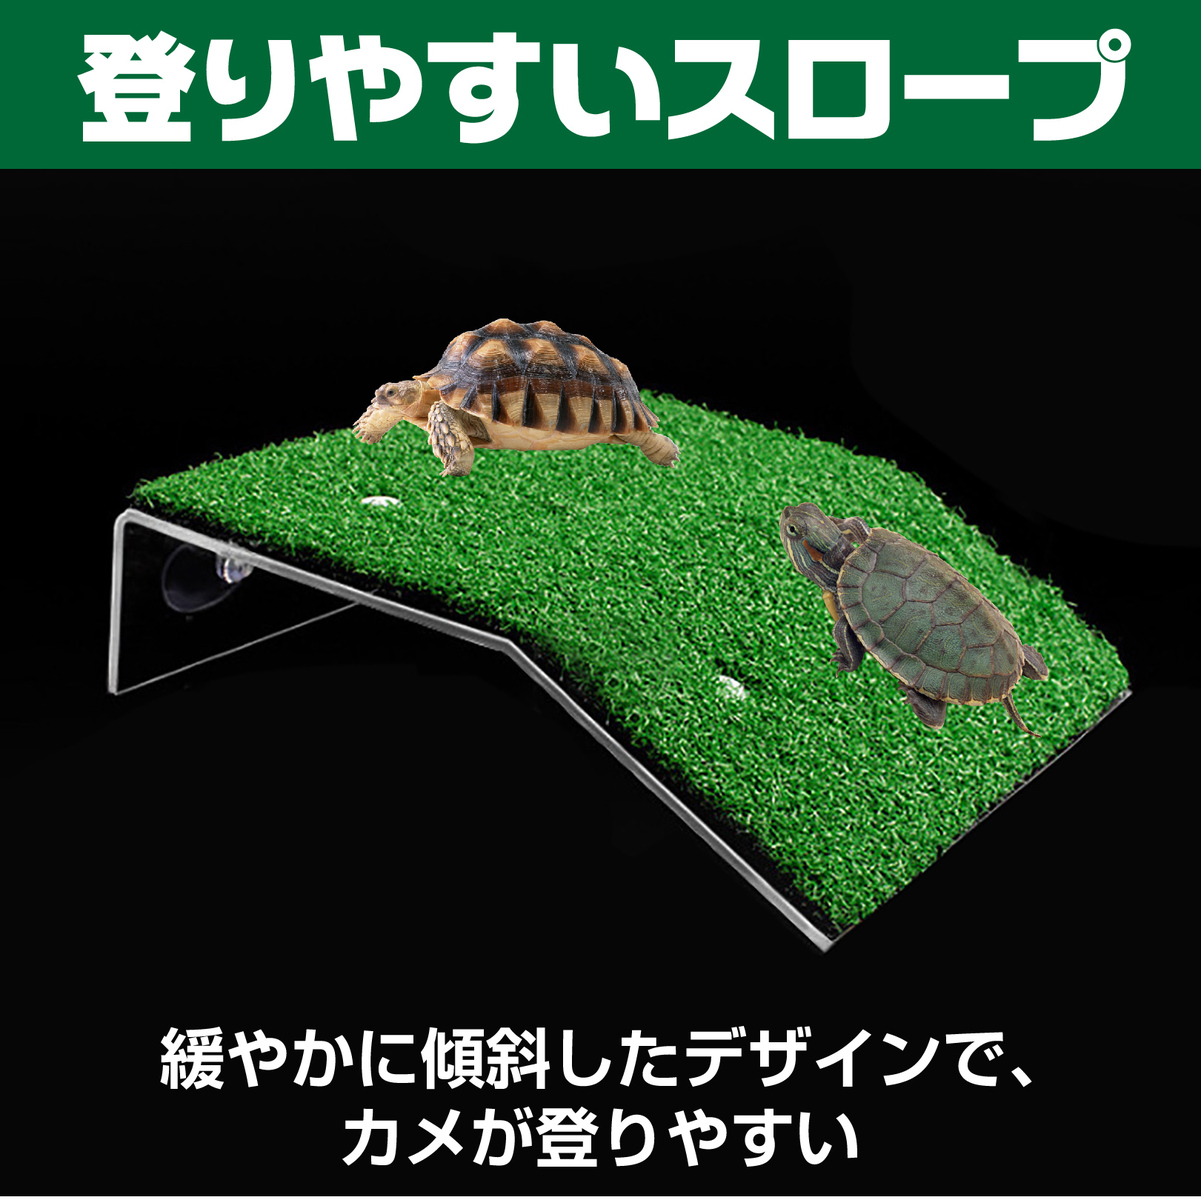 亀 爬虫類 日光浴 浮き島 吸盤 水槽 芝生 人工芝 浮島 グリーン